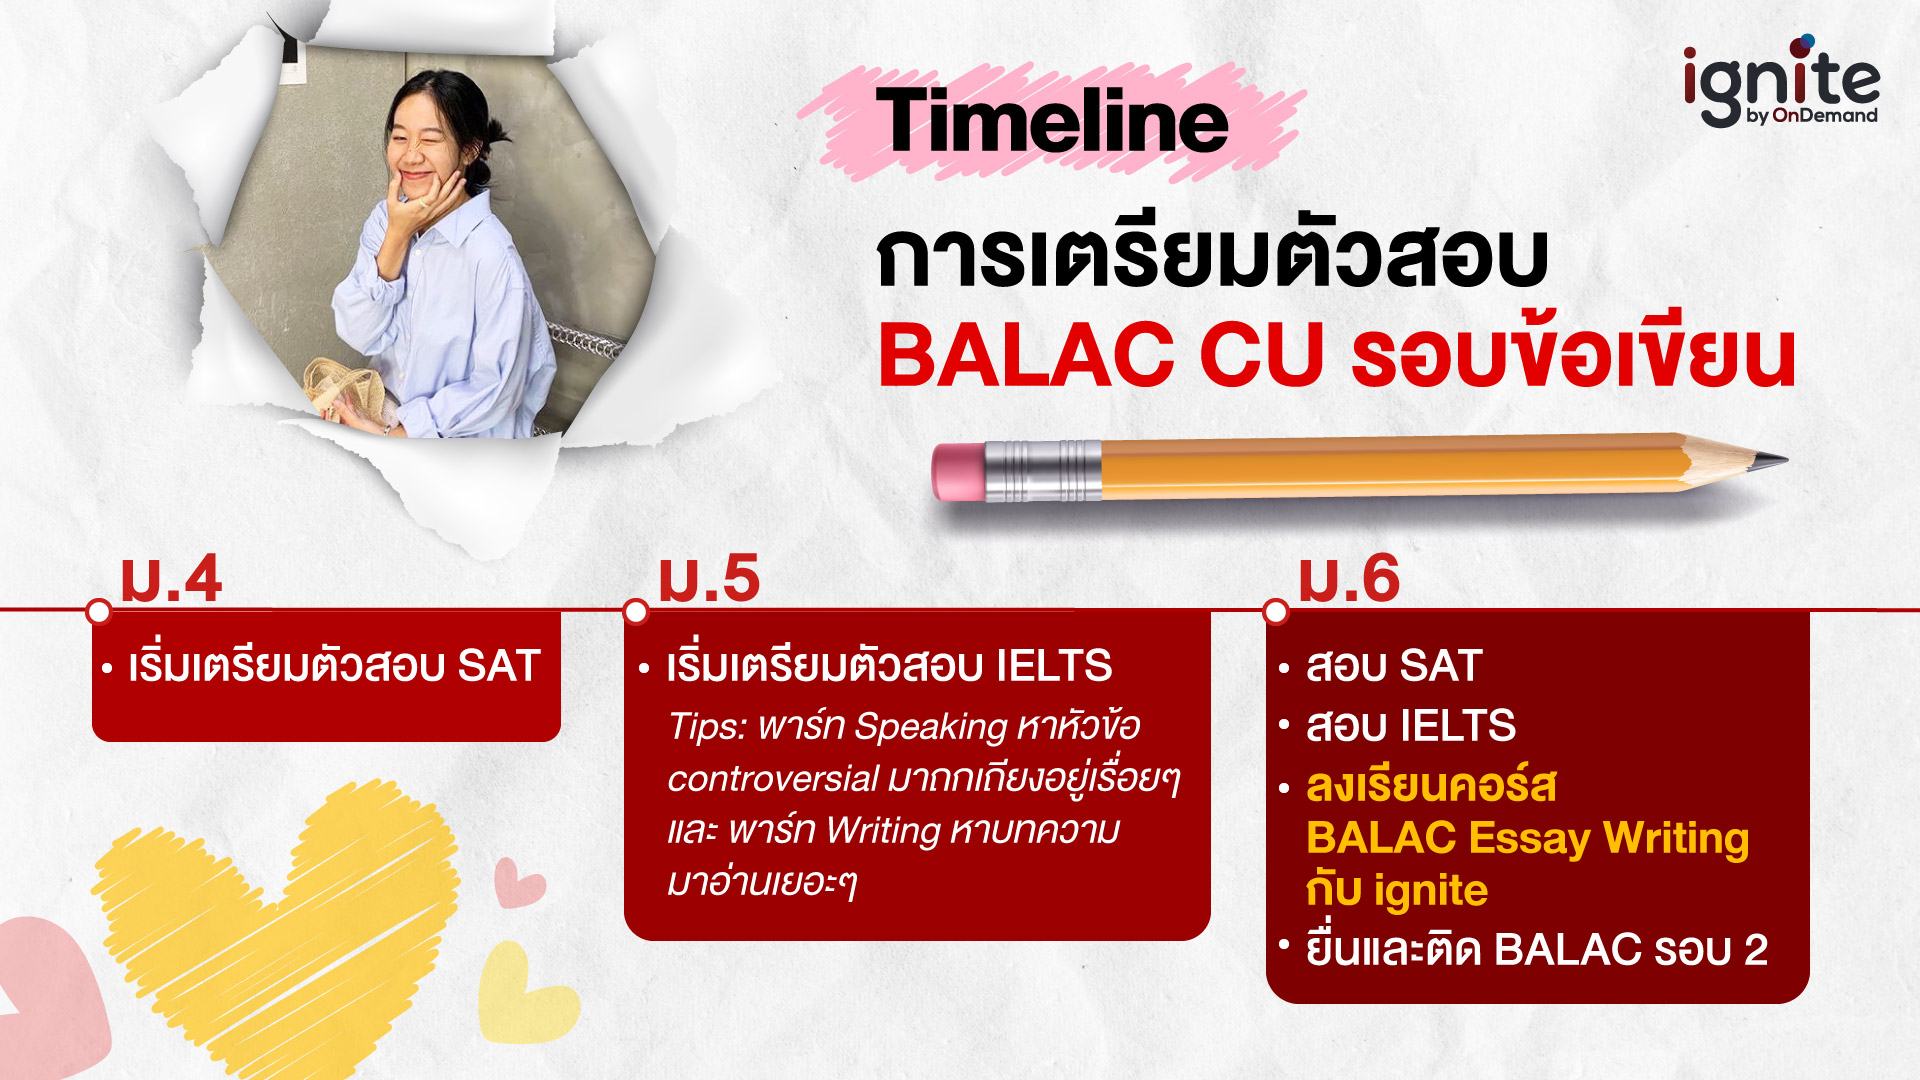 Timeline การสอบติด BALAC CU รอบข้อเขียน - Bigcover2